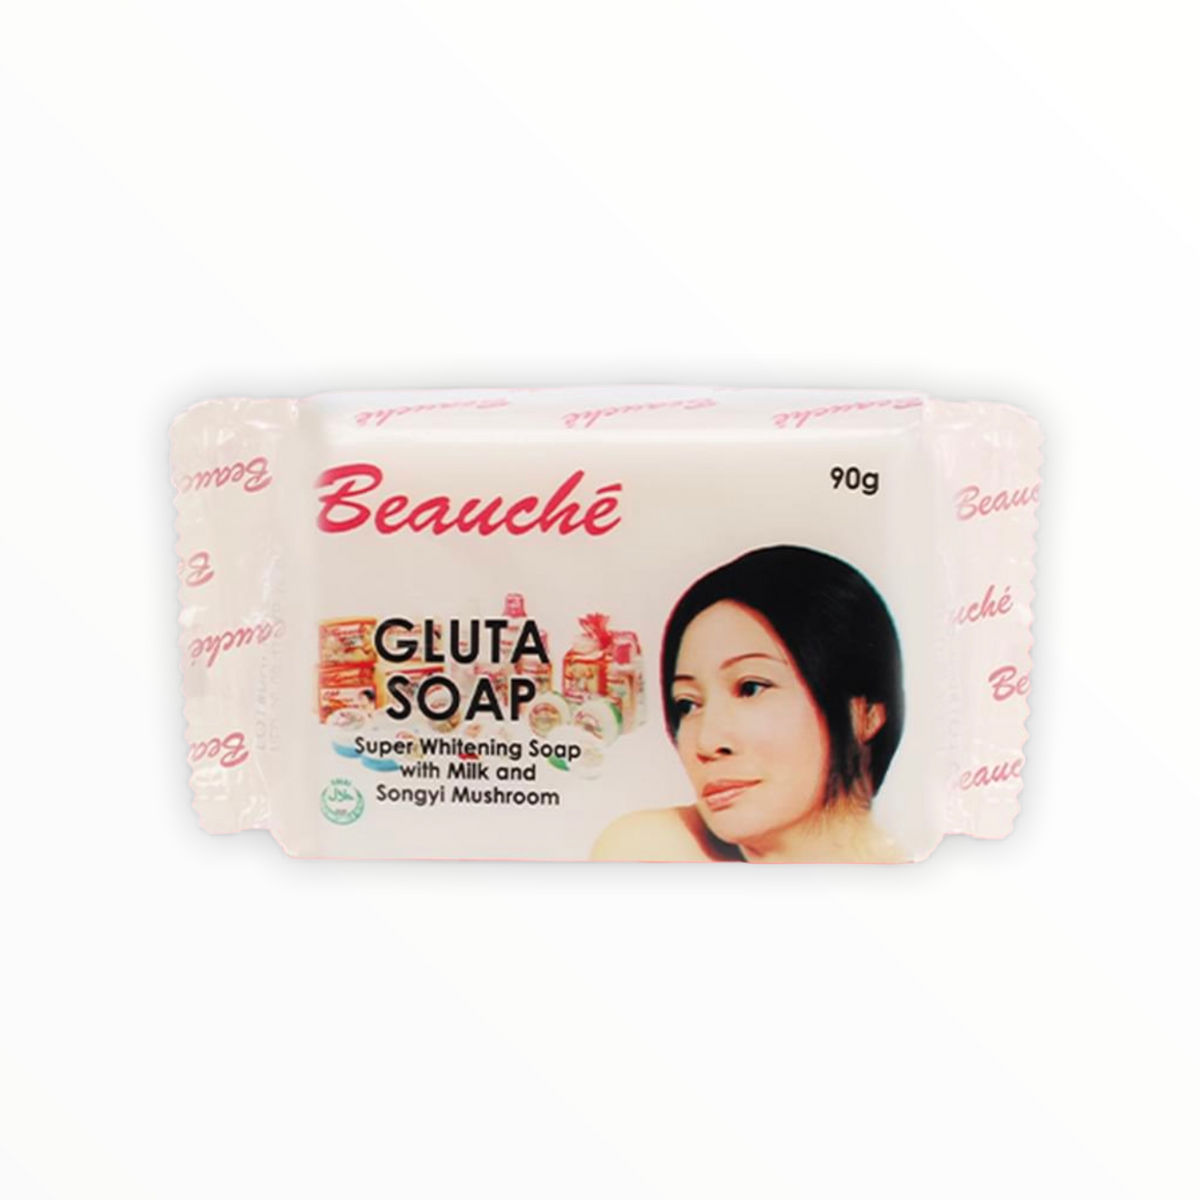 Beauche Gluta Soap 90g